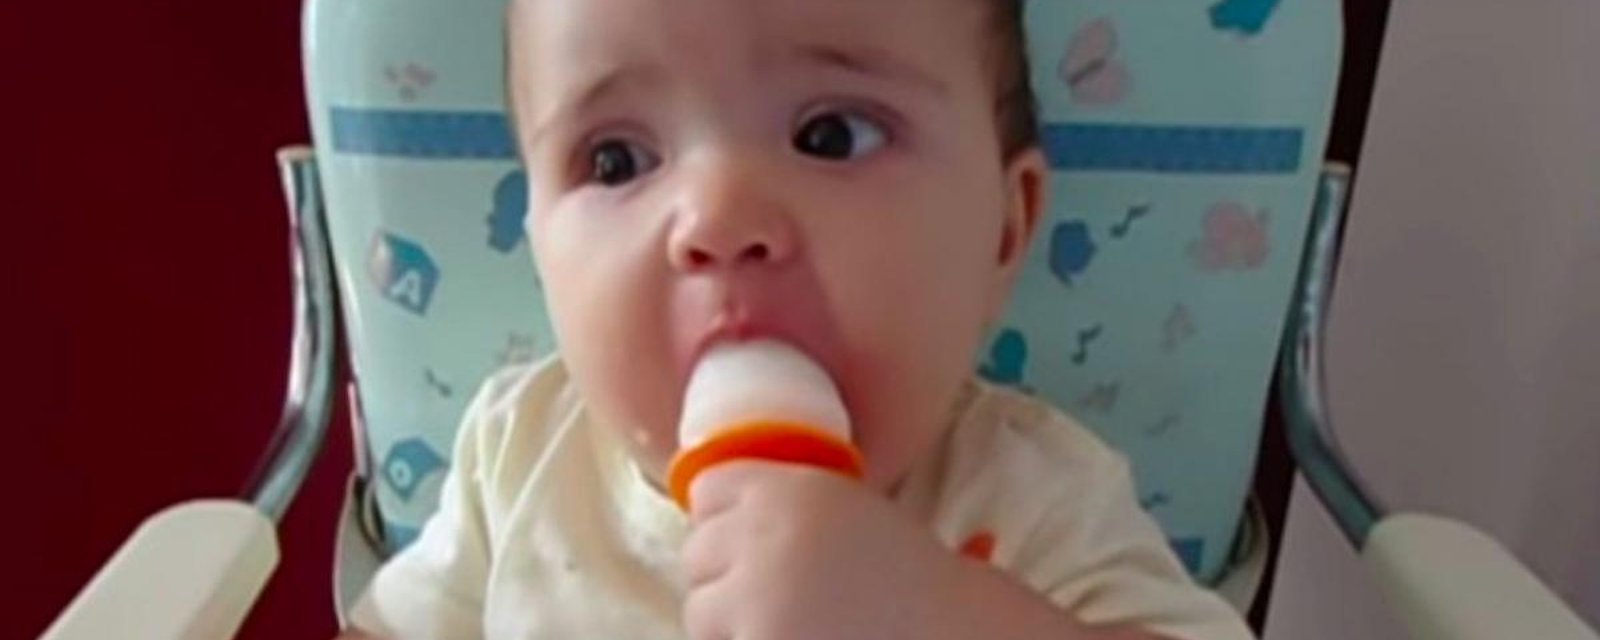 Pour soulager bébé, offrez-lui un popsicle au lait maternel!